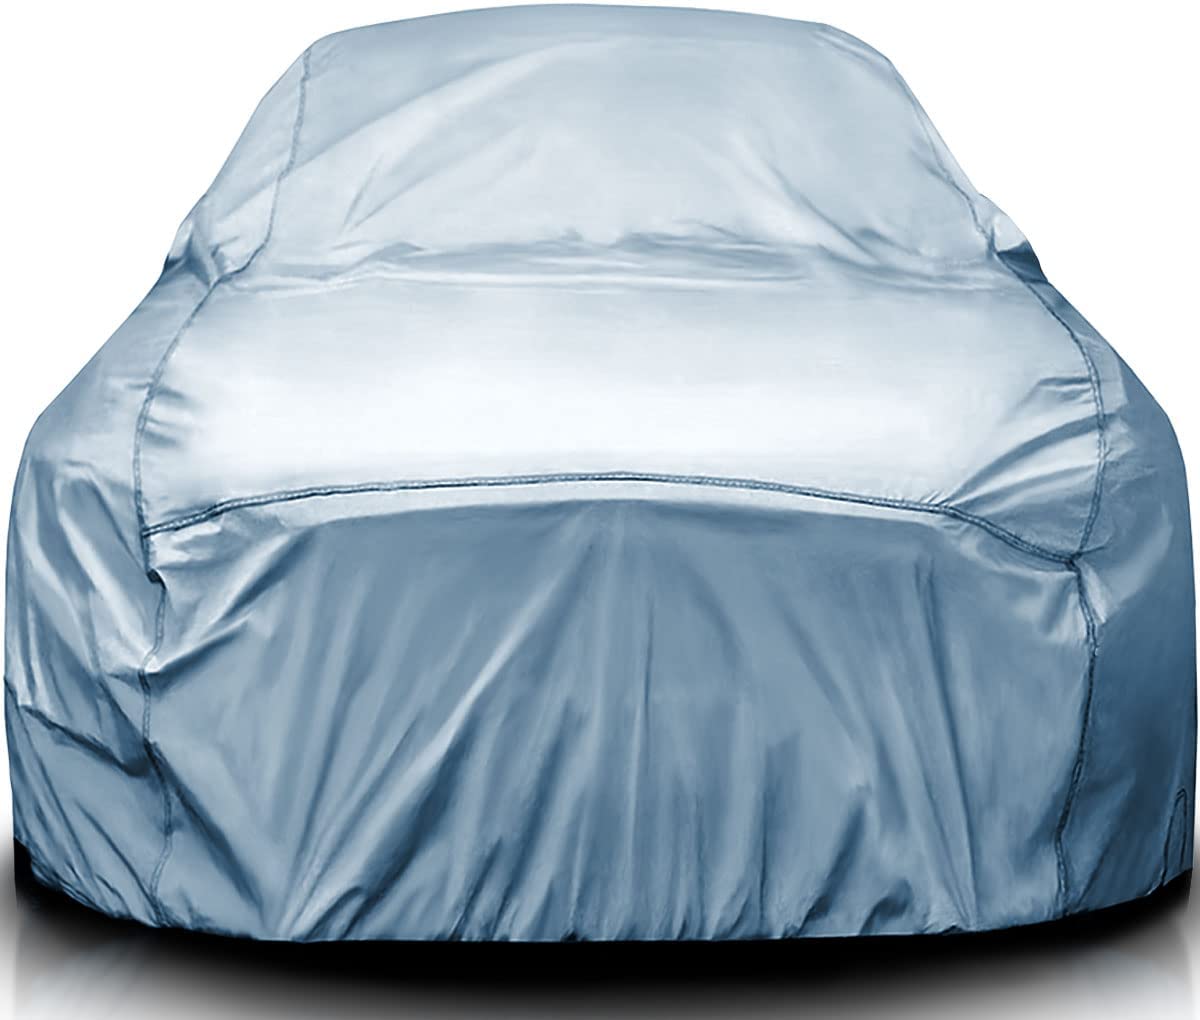 Premium Car Cover Waterproof